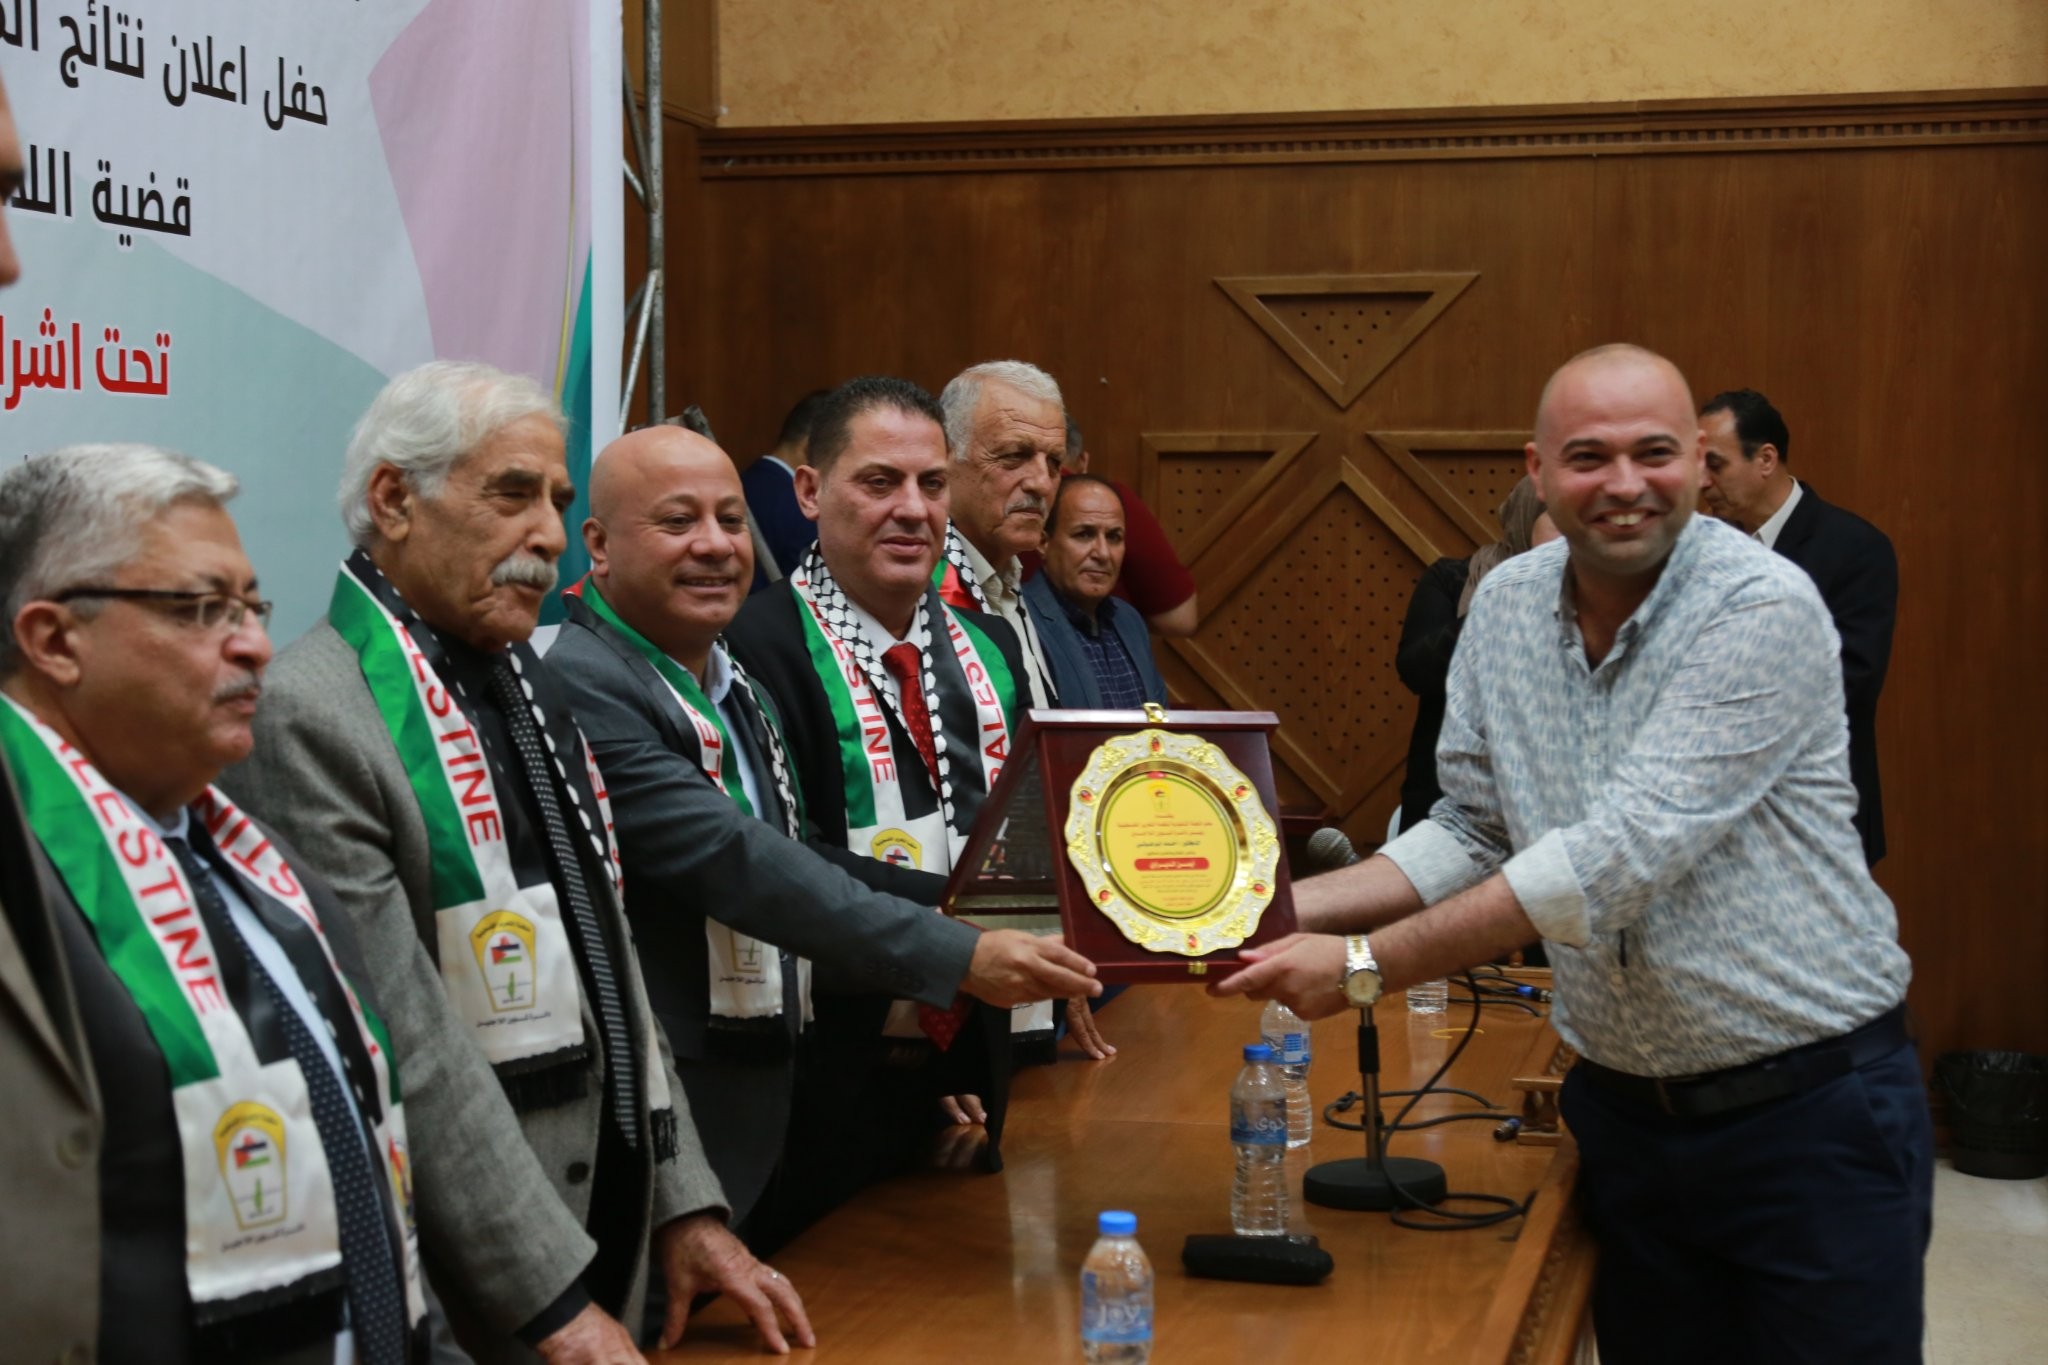 غزة: شؤون اللاجئين تُعلن الفائزين بالمسابقة البحثية لأفضل بحث علمي حول قضية اللاجئين الفلسطينيين